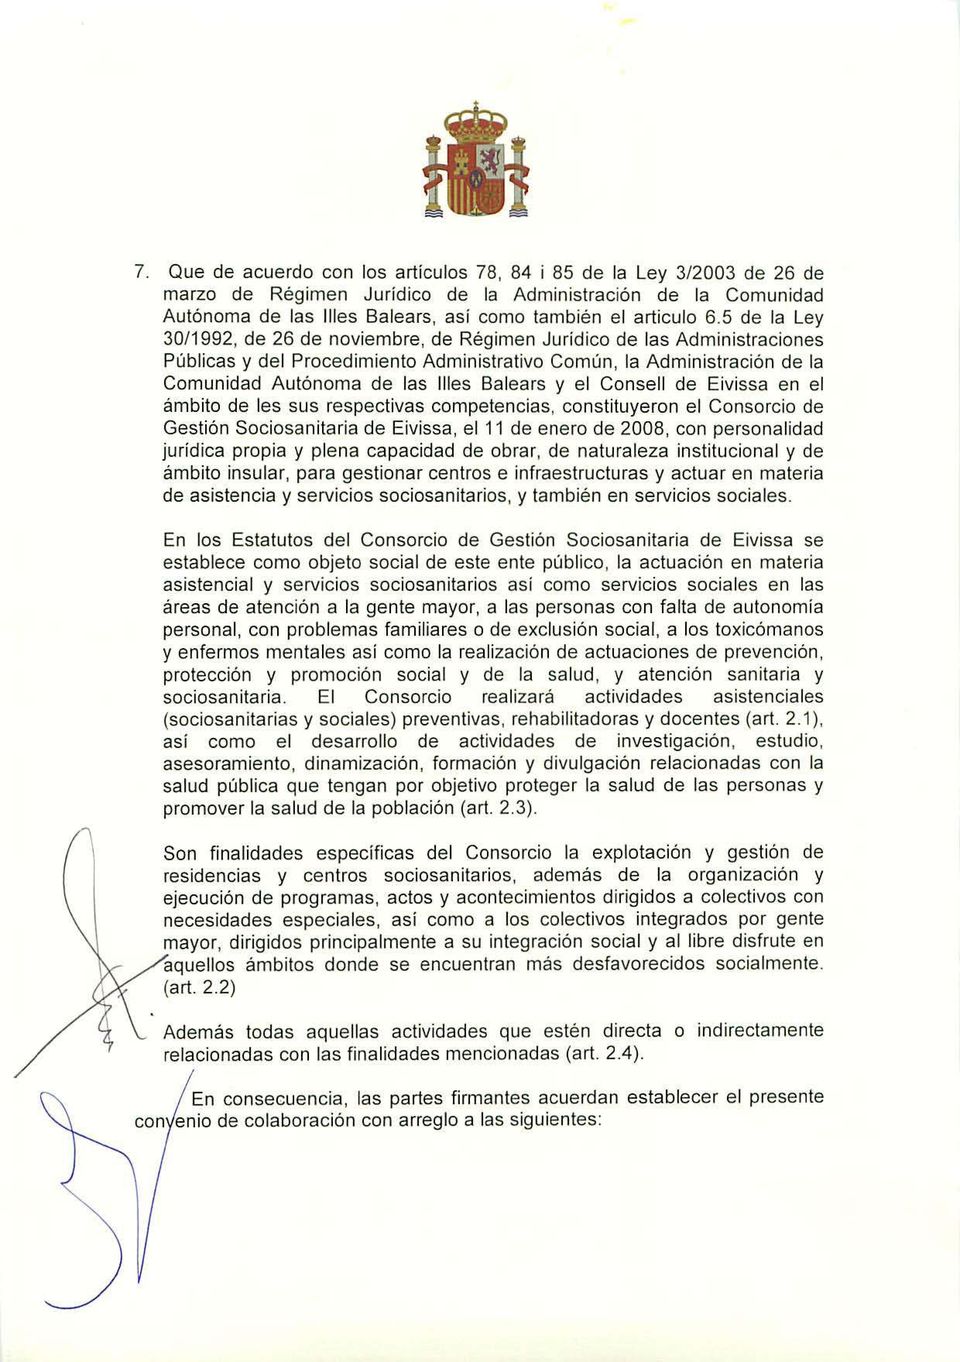 y el Consell de Eivissa en el ámbito de les sus respectivas competencias, constituyeron el Consorcio de Gestión Sociasanitaria de Eivissa, el 11 de enero de 2008, con personalidad jurídica propia y